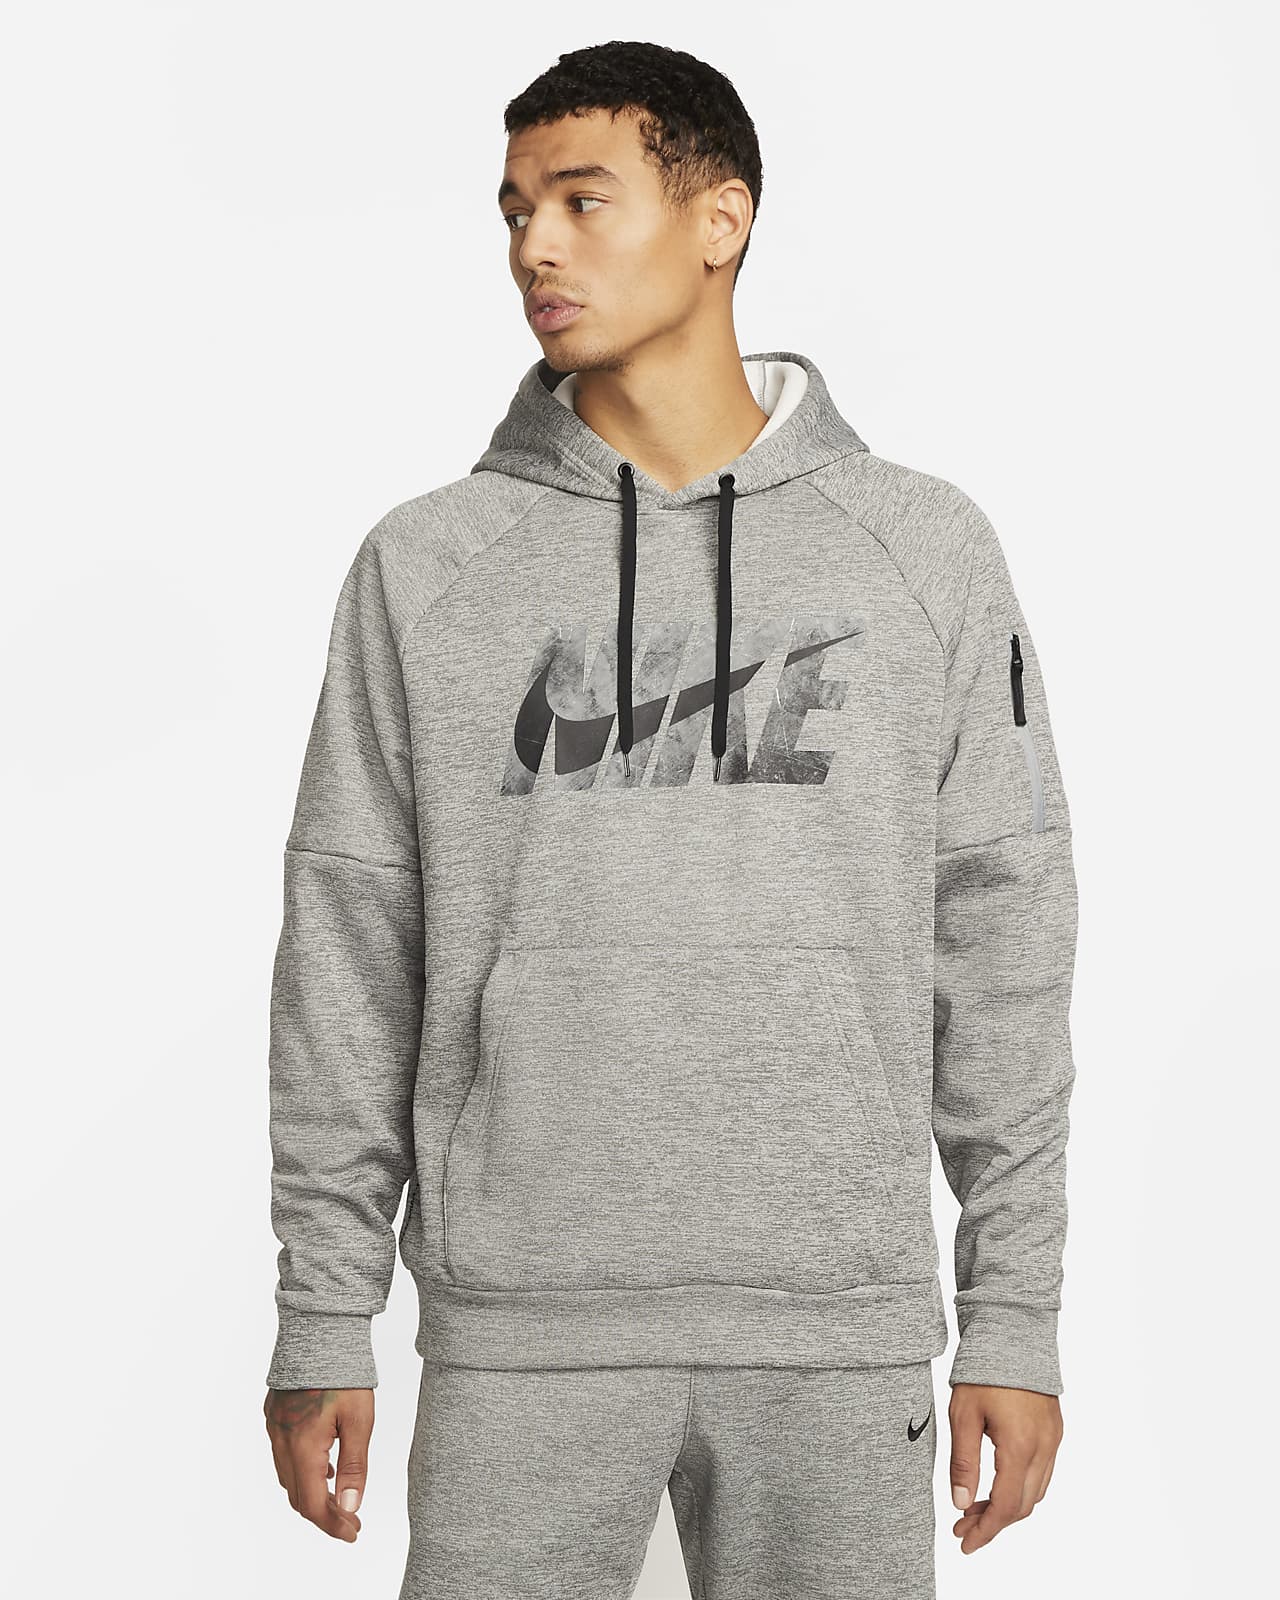 Nike Men's Pullover Fitness Hoodie.